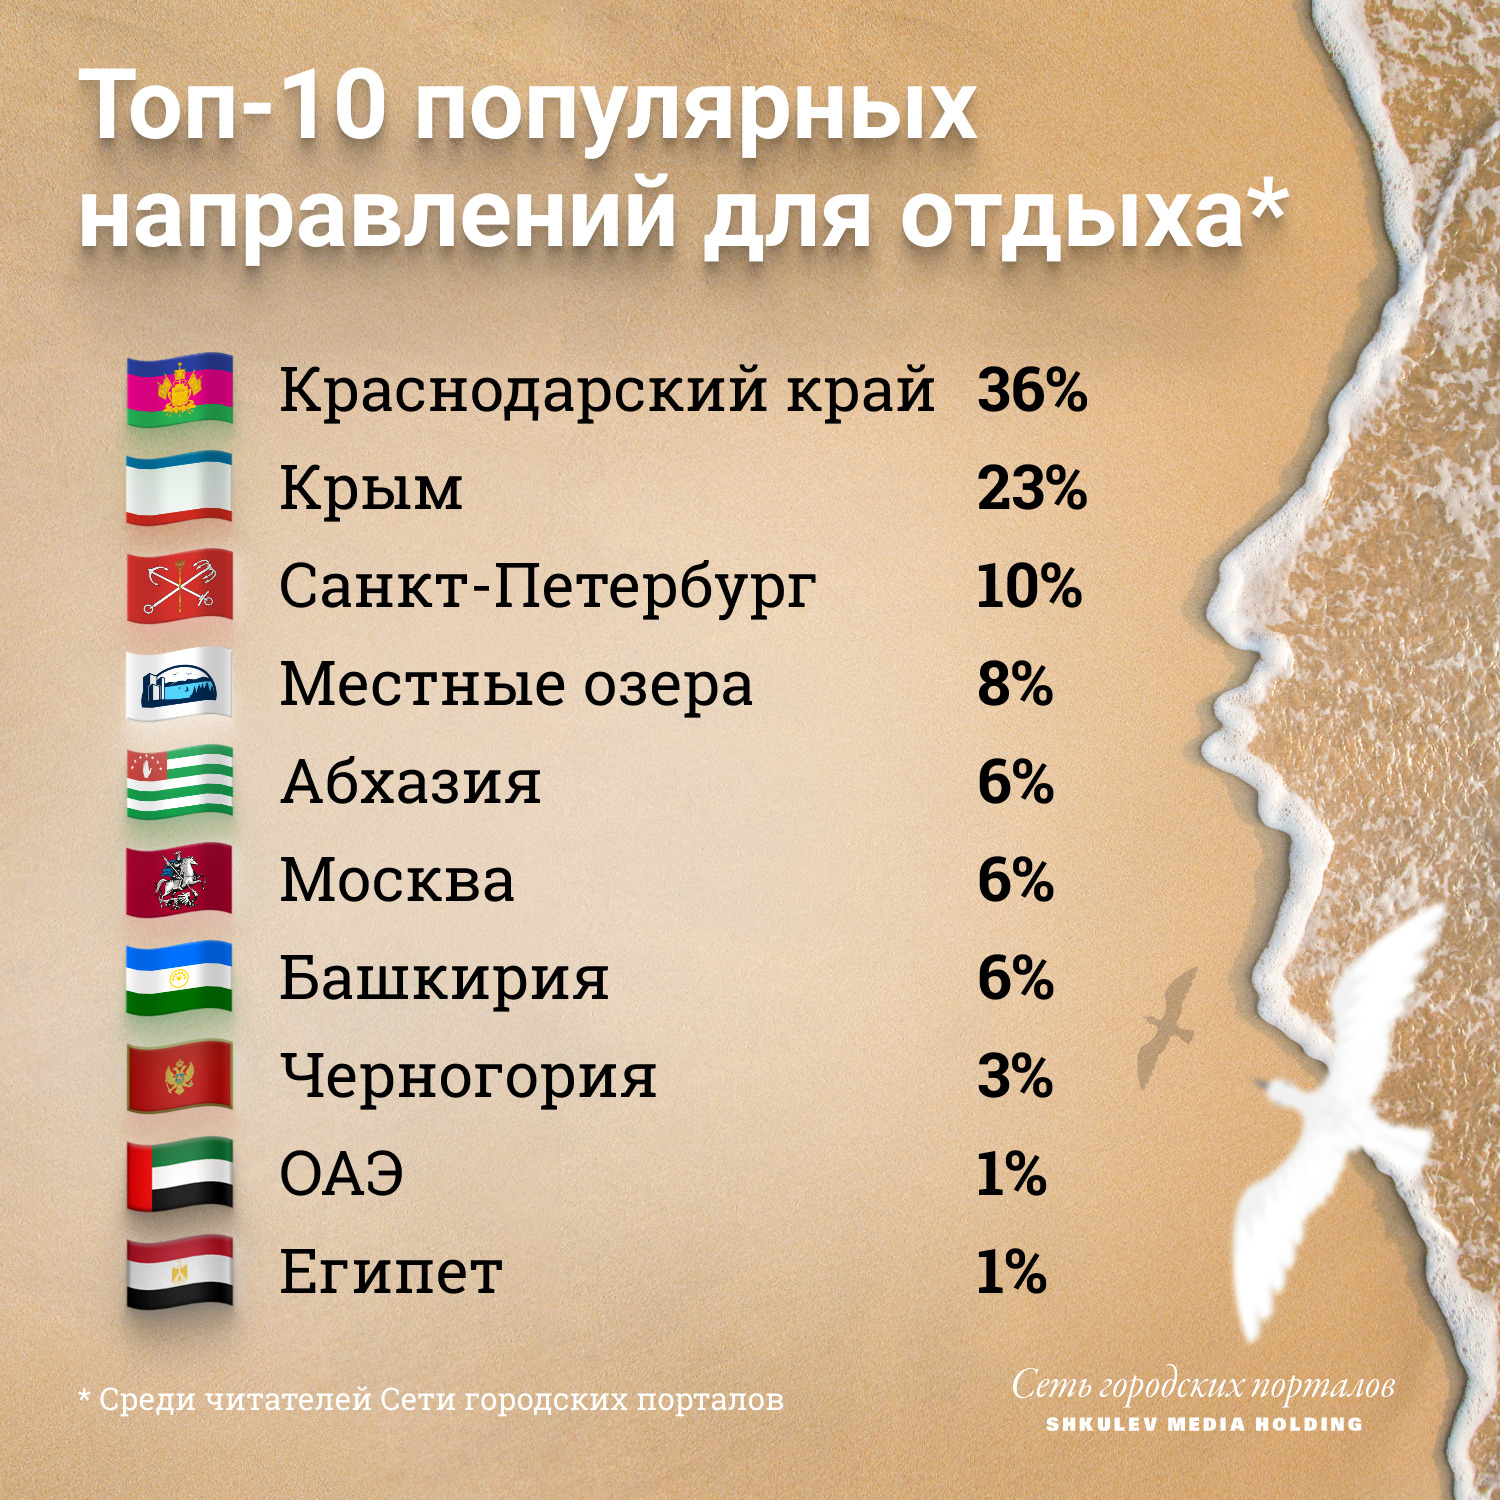 Популярные направления для отдыха среди российских туристов